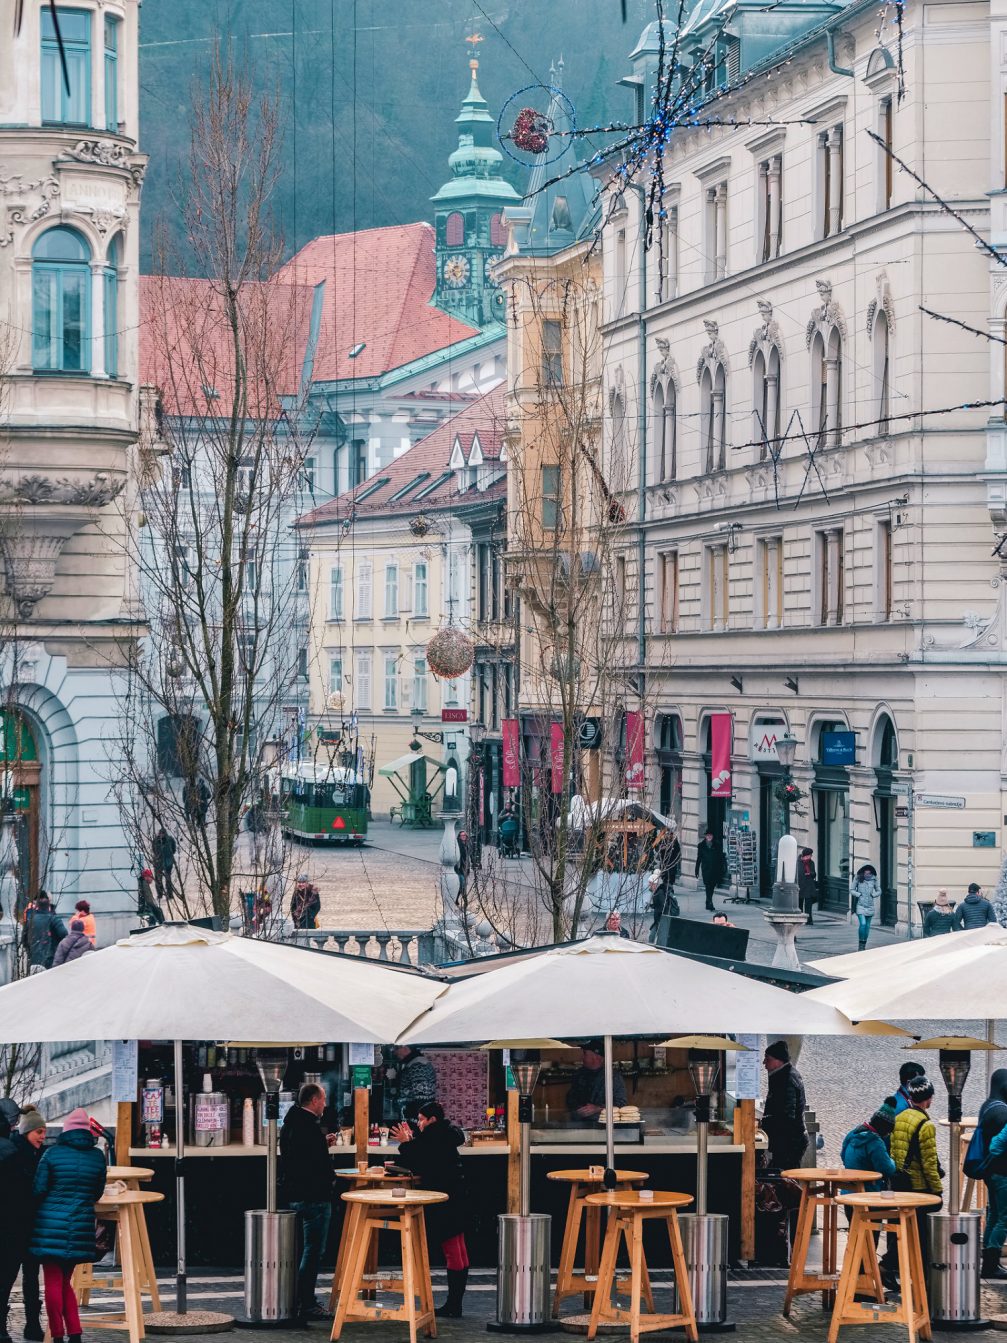 Streets of Ljubljana Old Town in the festive season